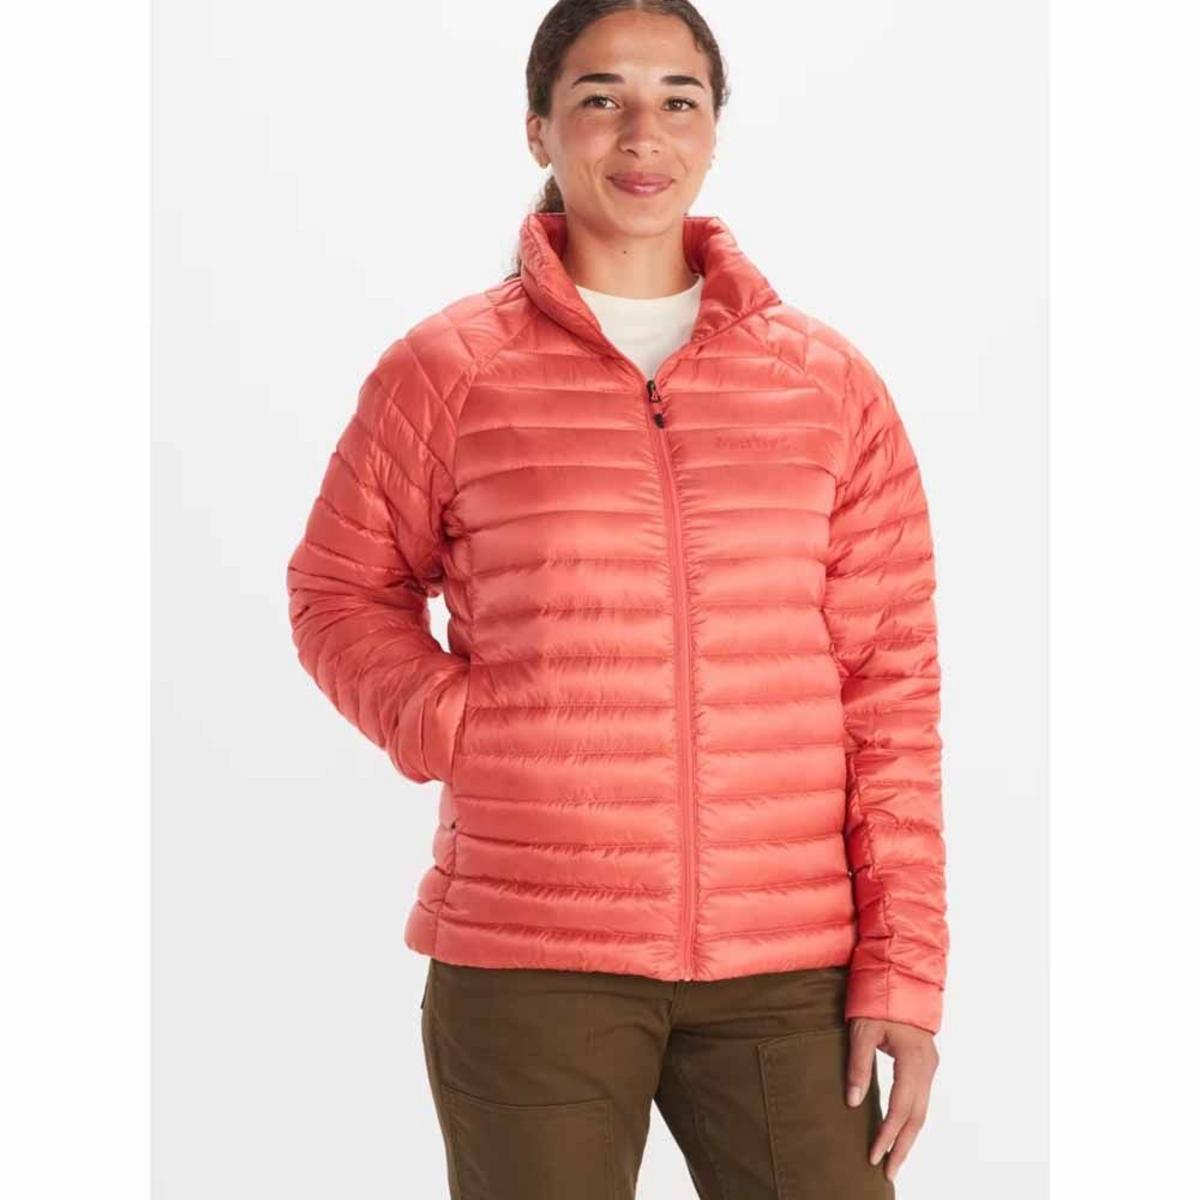 Marmot Women's Hype Down Jacket